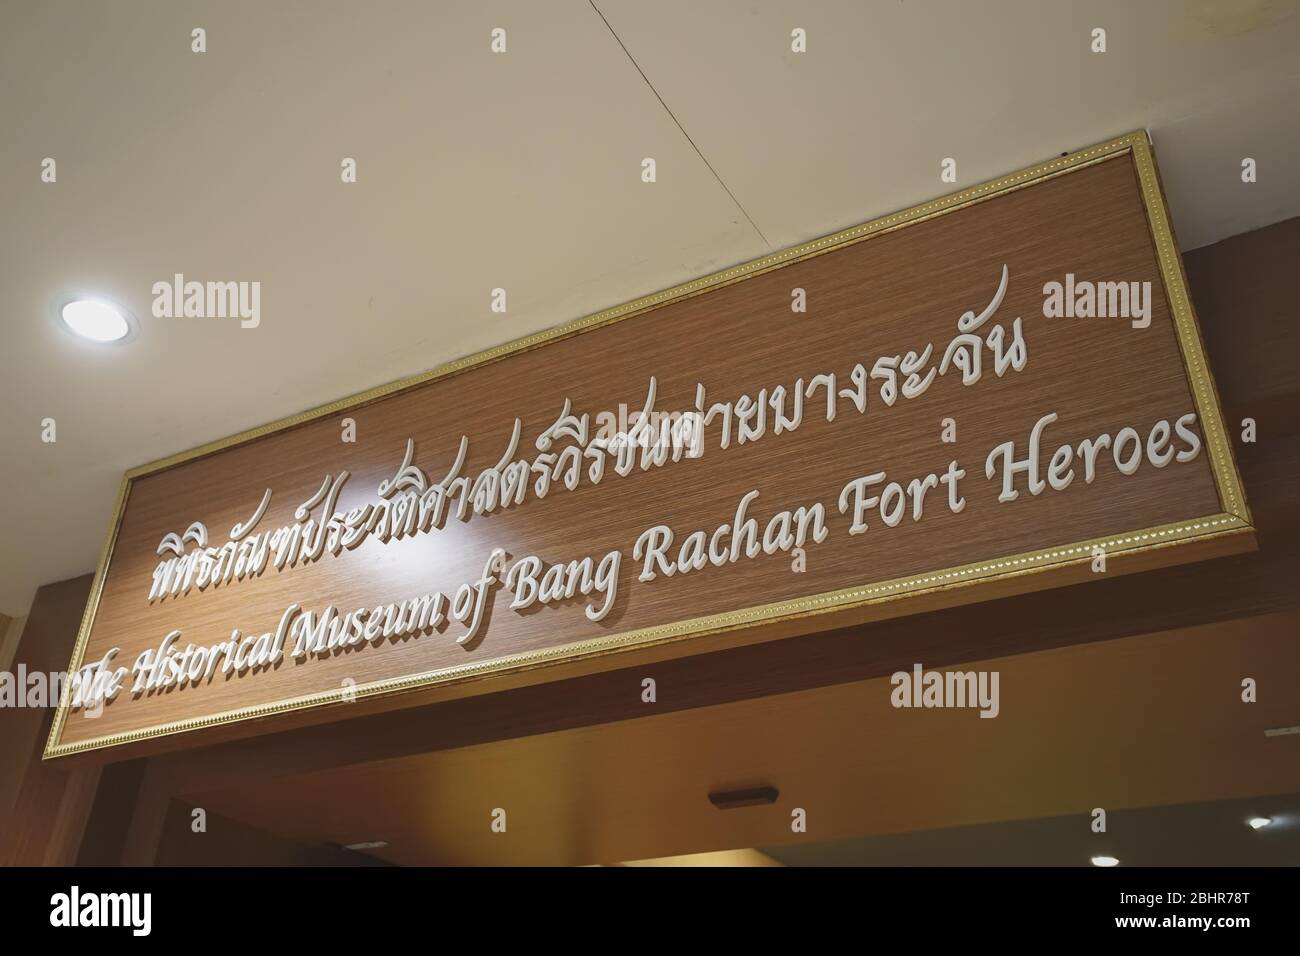 Sing Buri, Thaïlande - 17 novembre 2019 : visite du Musée historique de Bang Rachan fort Heroes dans la province de Sing Buri, Thaïlande. Banque D'Images